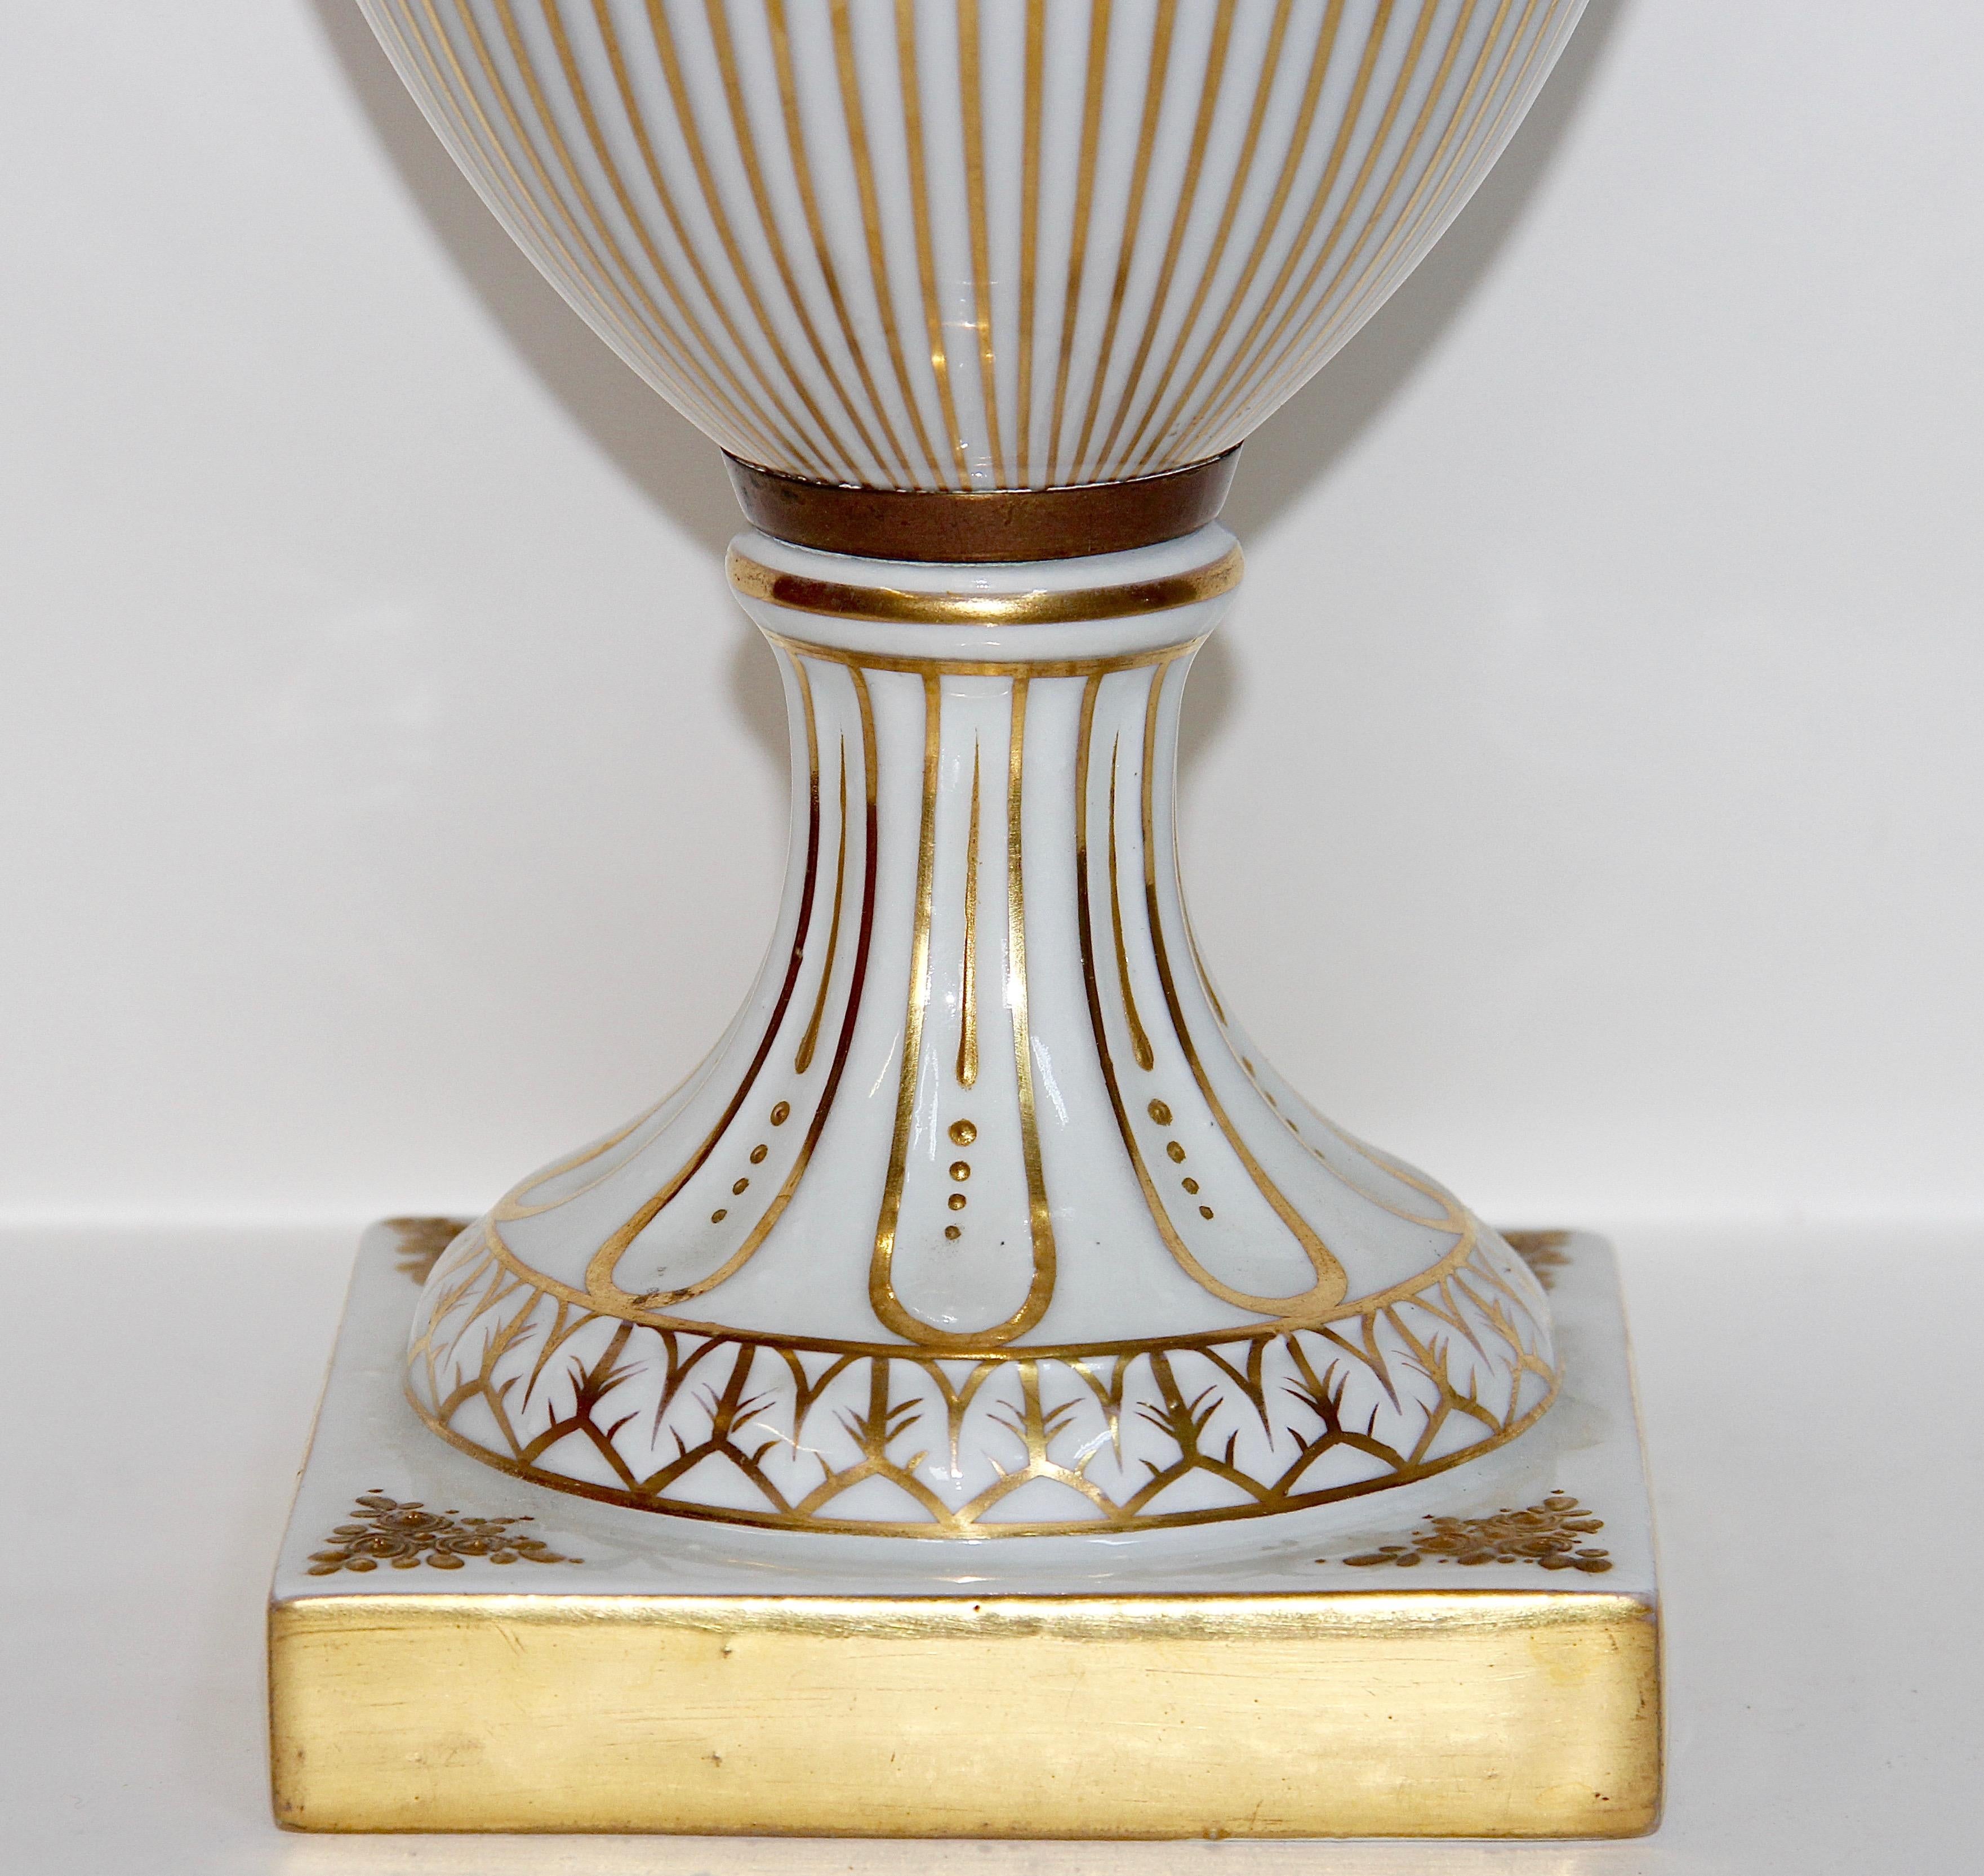 Magnifique porcelaine de Dresde, amphore, vase à couvercle, urne. Avec peinture dorée.